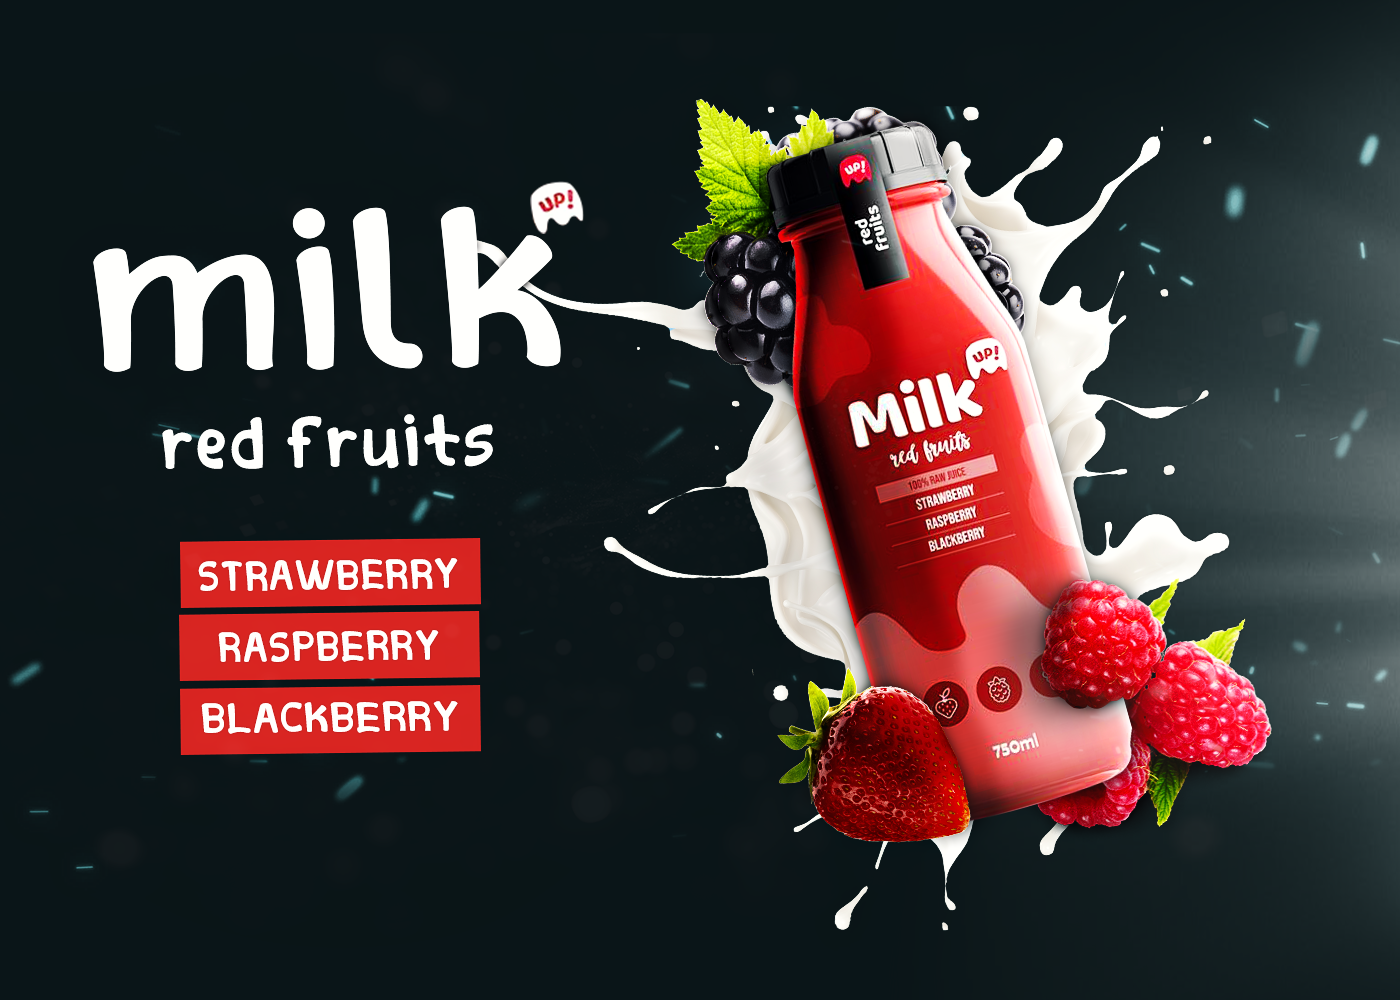 milk design Social media post Graphic Designer drink bottle poster blackberry Fruit straeberry